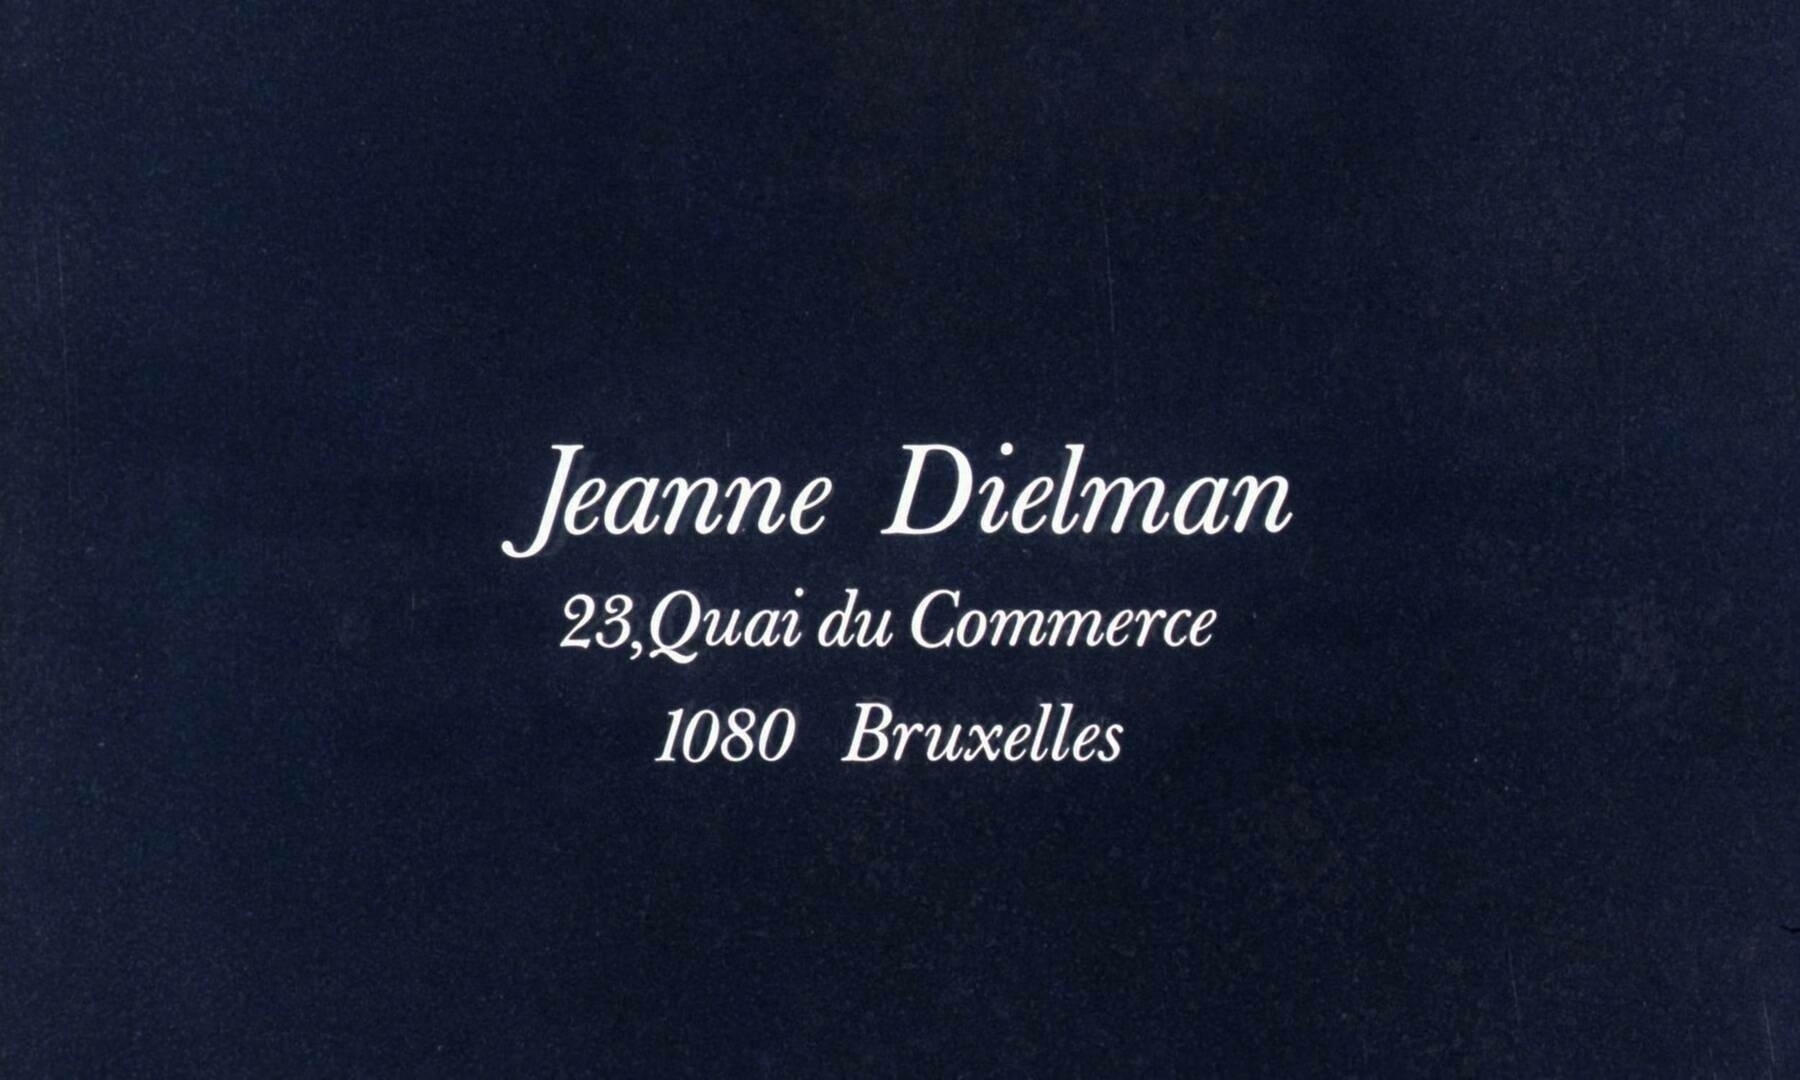 The title card for the film, Jeanne Dielman, 23, quai du Commerce, 1080 Brussels.